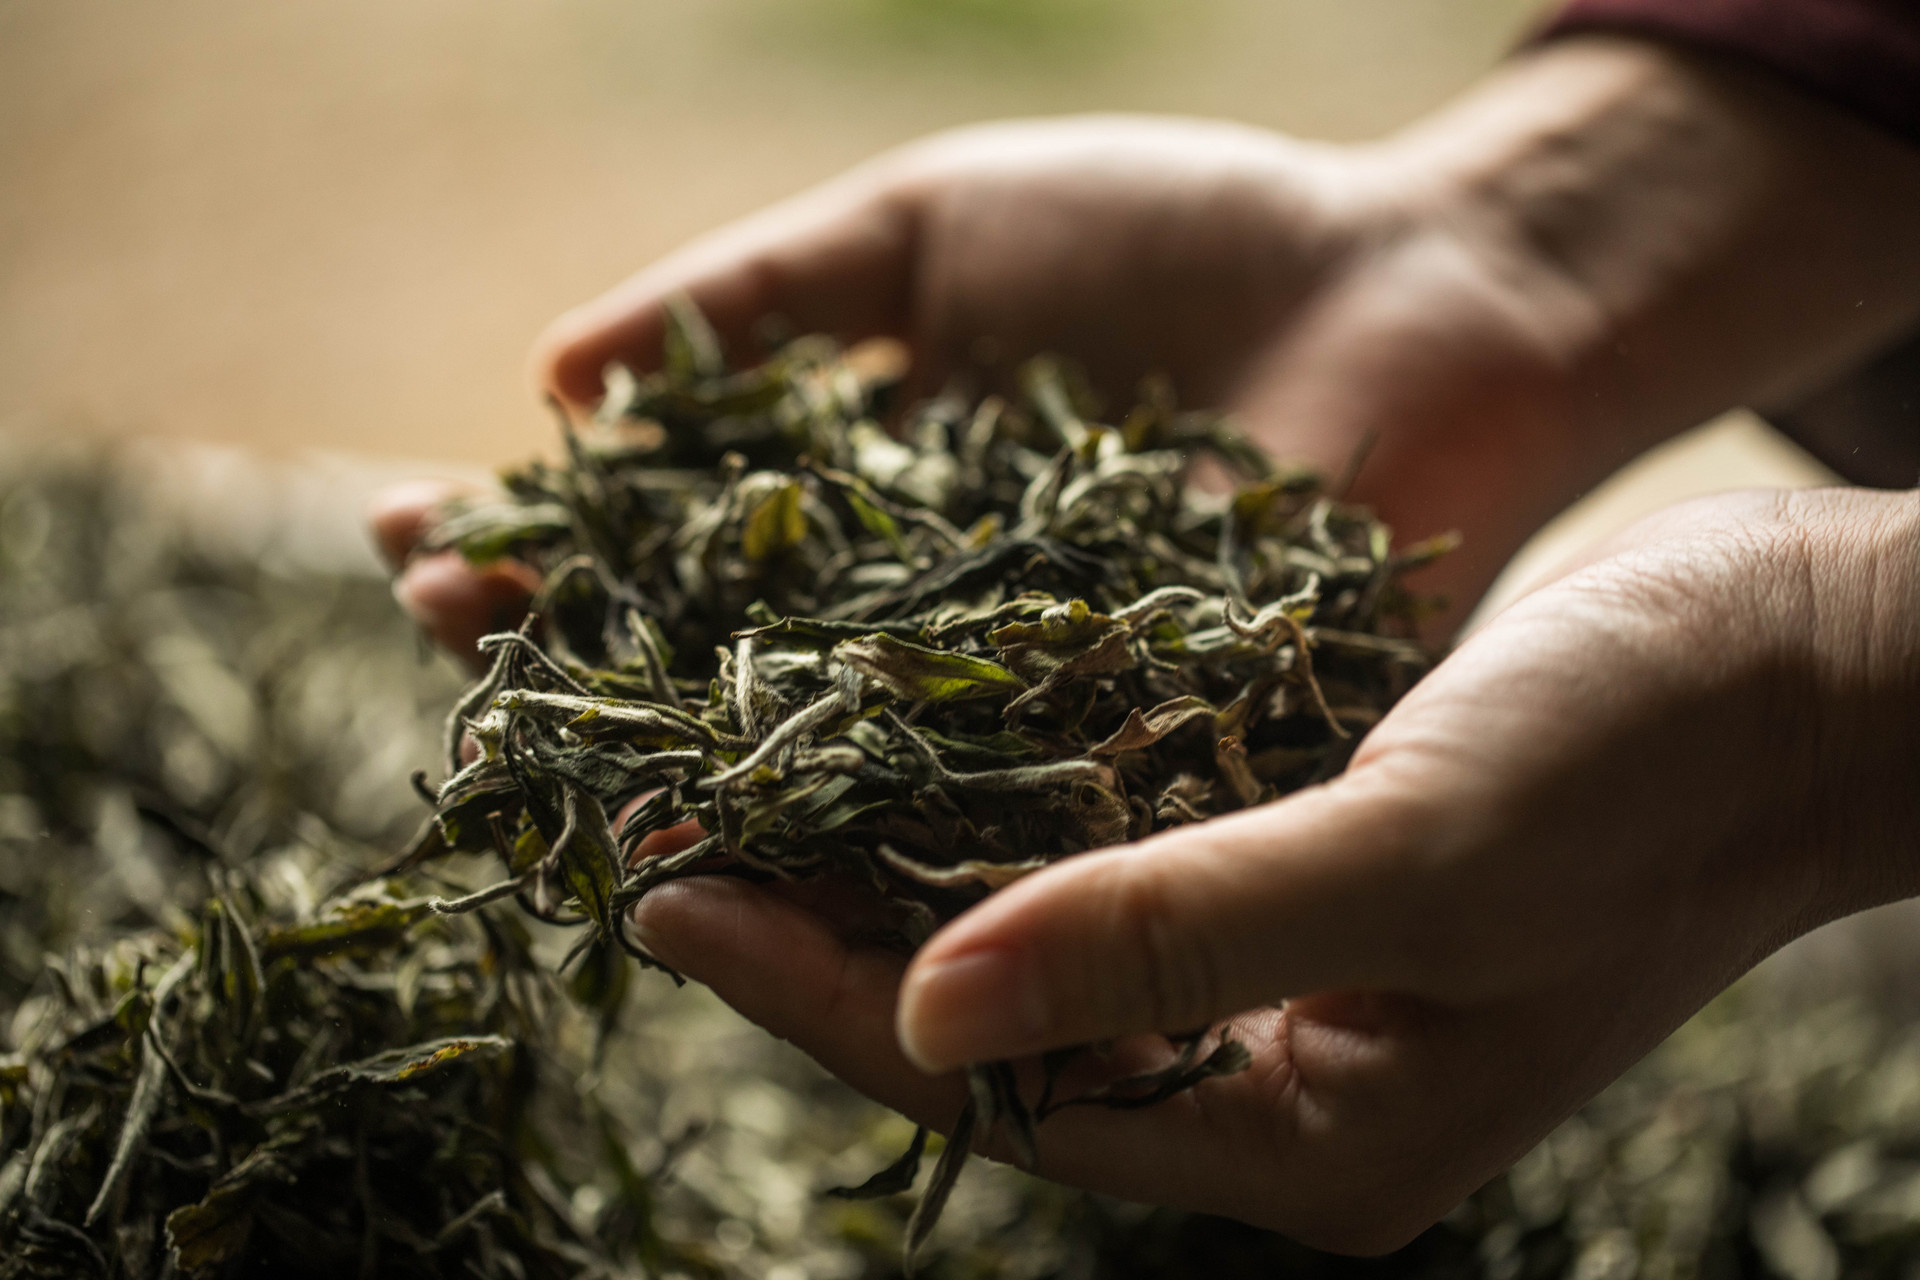 加大抽检力度 崂山区把好茶叶产业发展质量安全关